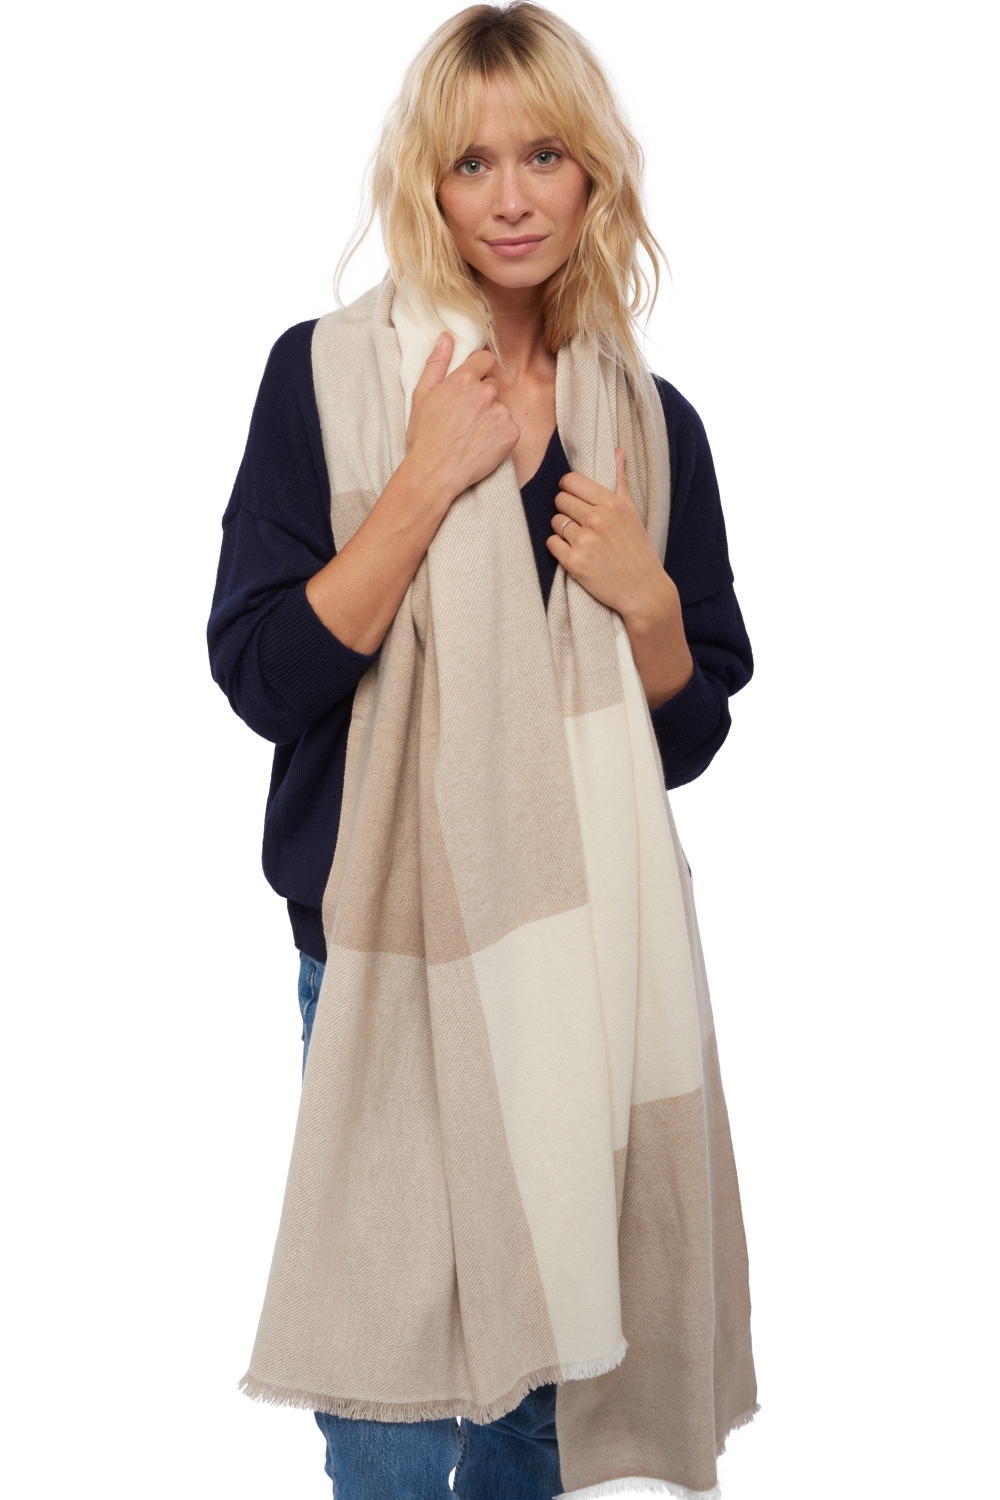 Cashmere accessori sciarpe foulard verona natural ecru natural stone 225 x 75 cm